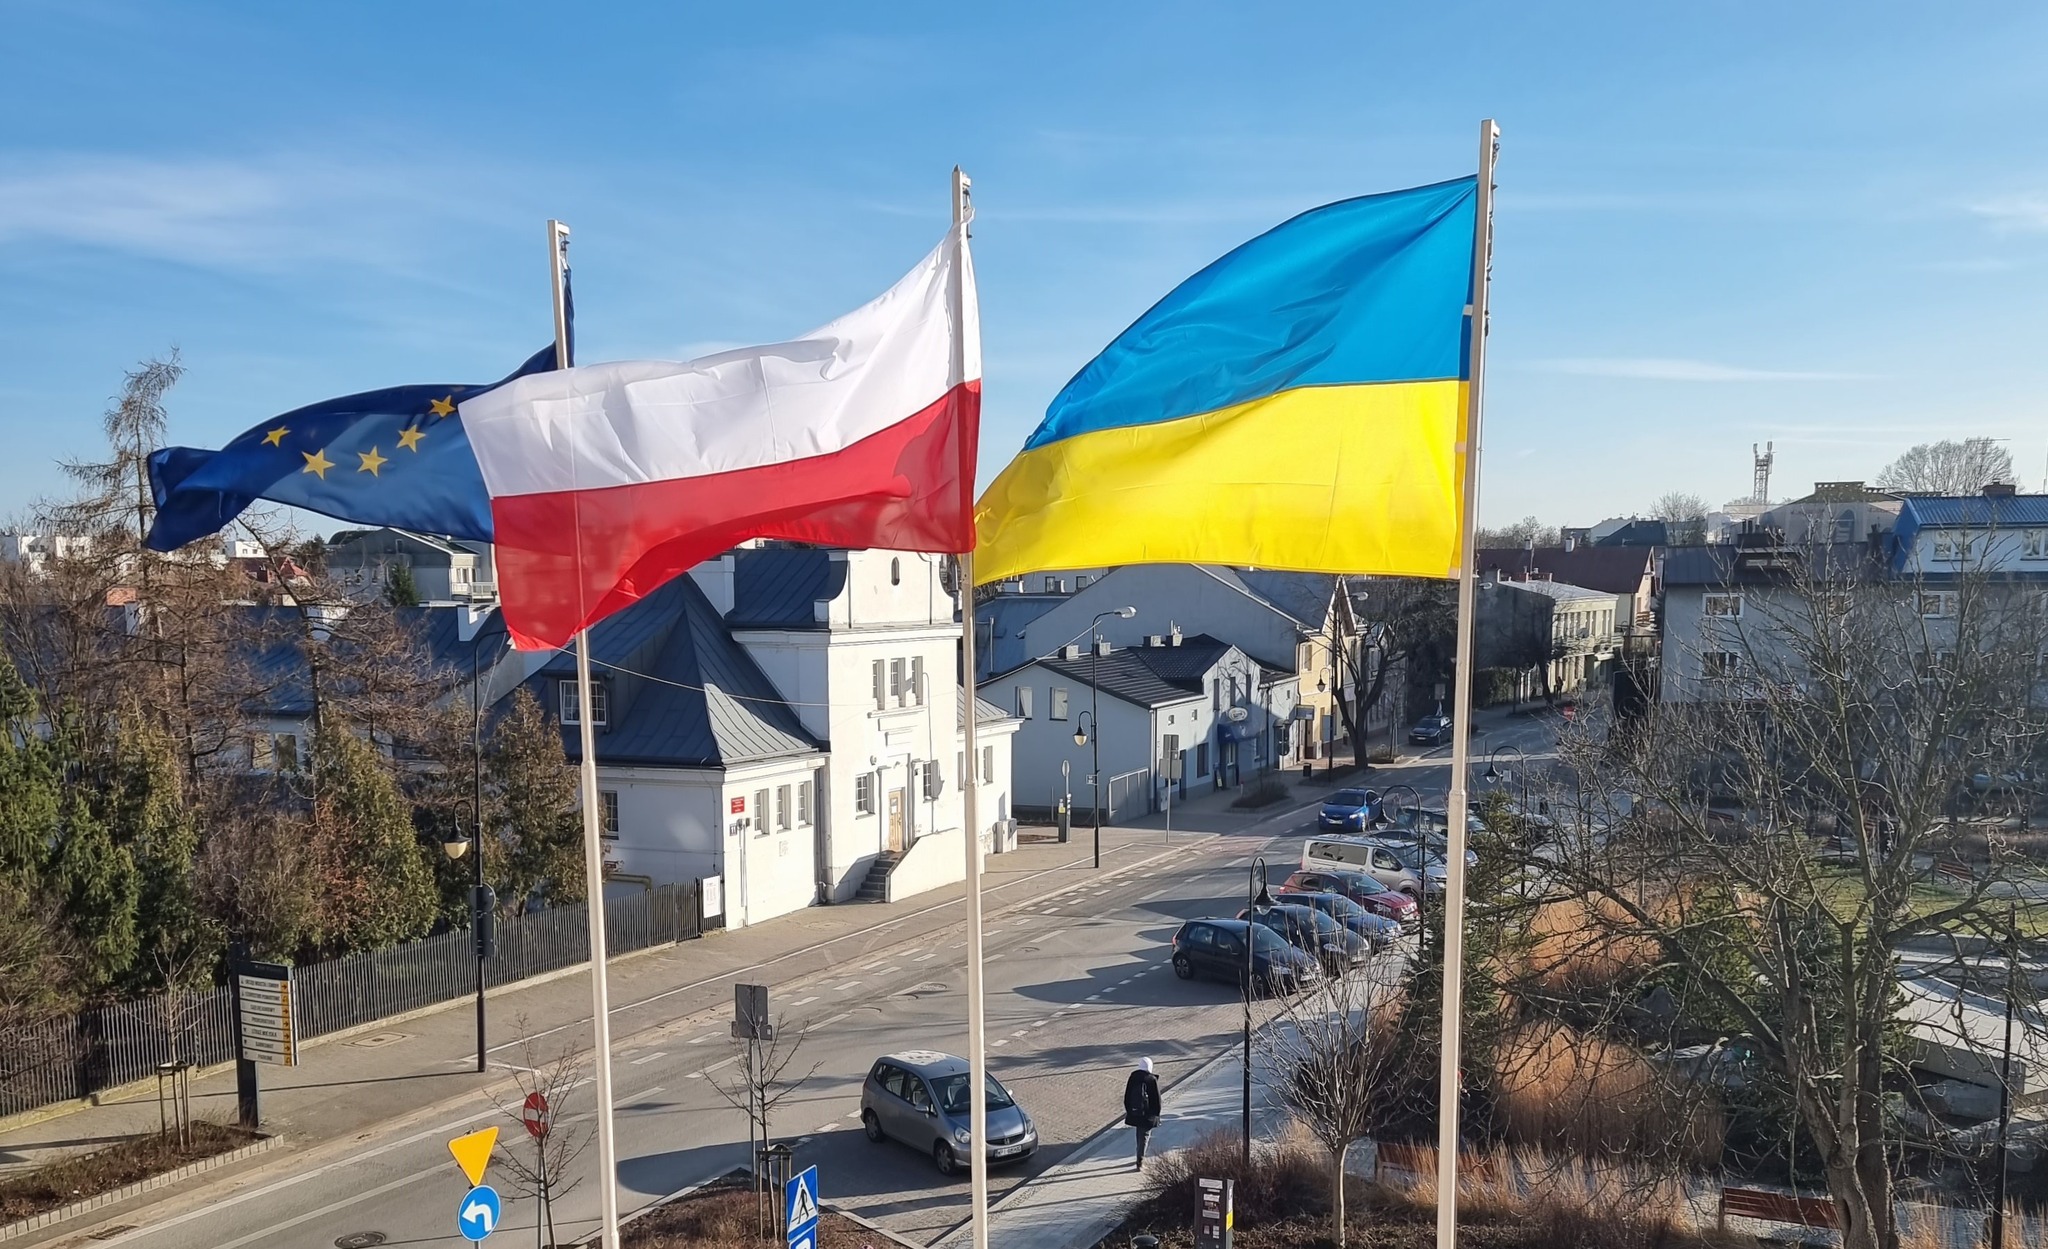 Flaga Unii Europejskiej, Polski oraz Ukrainy przy Urzędzie Miasta i Gminy Piaseczno